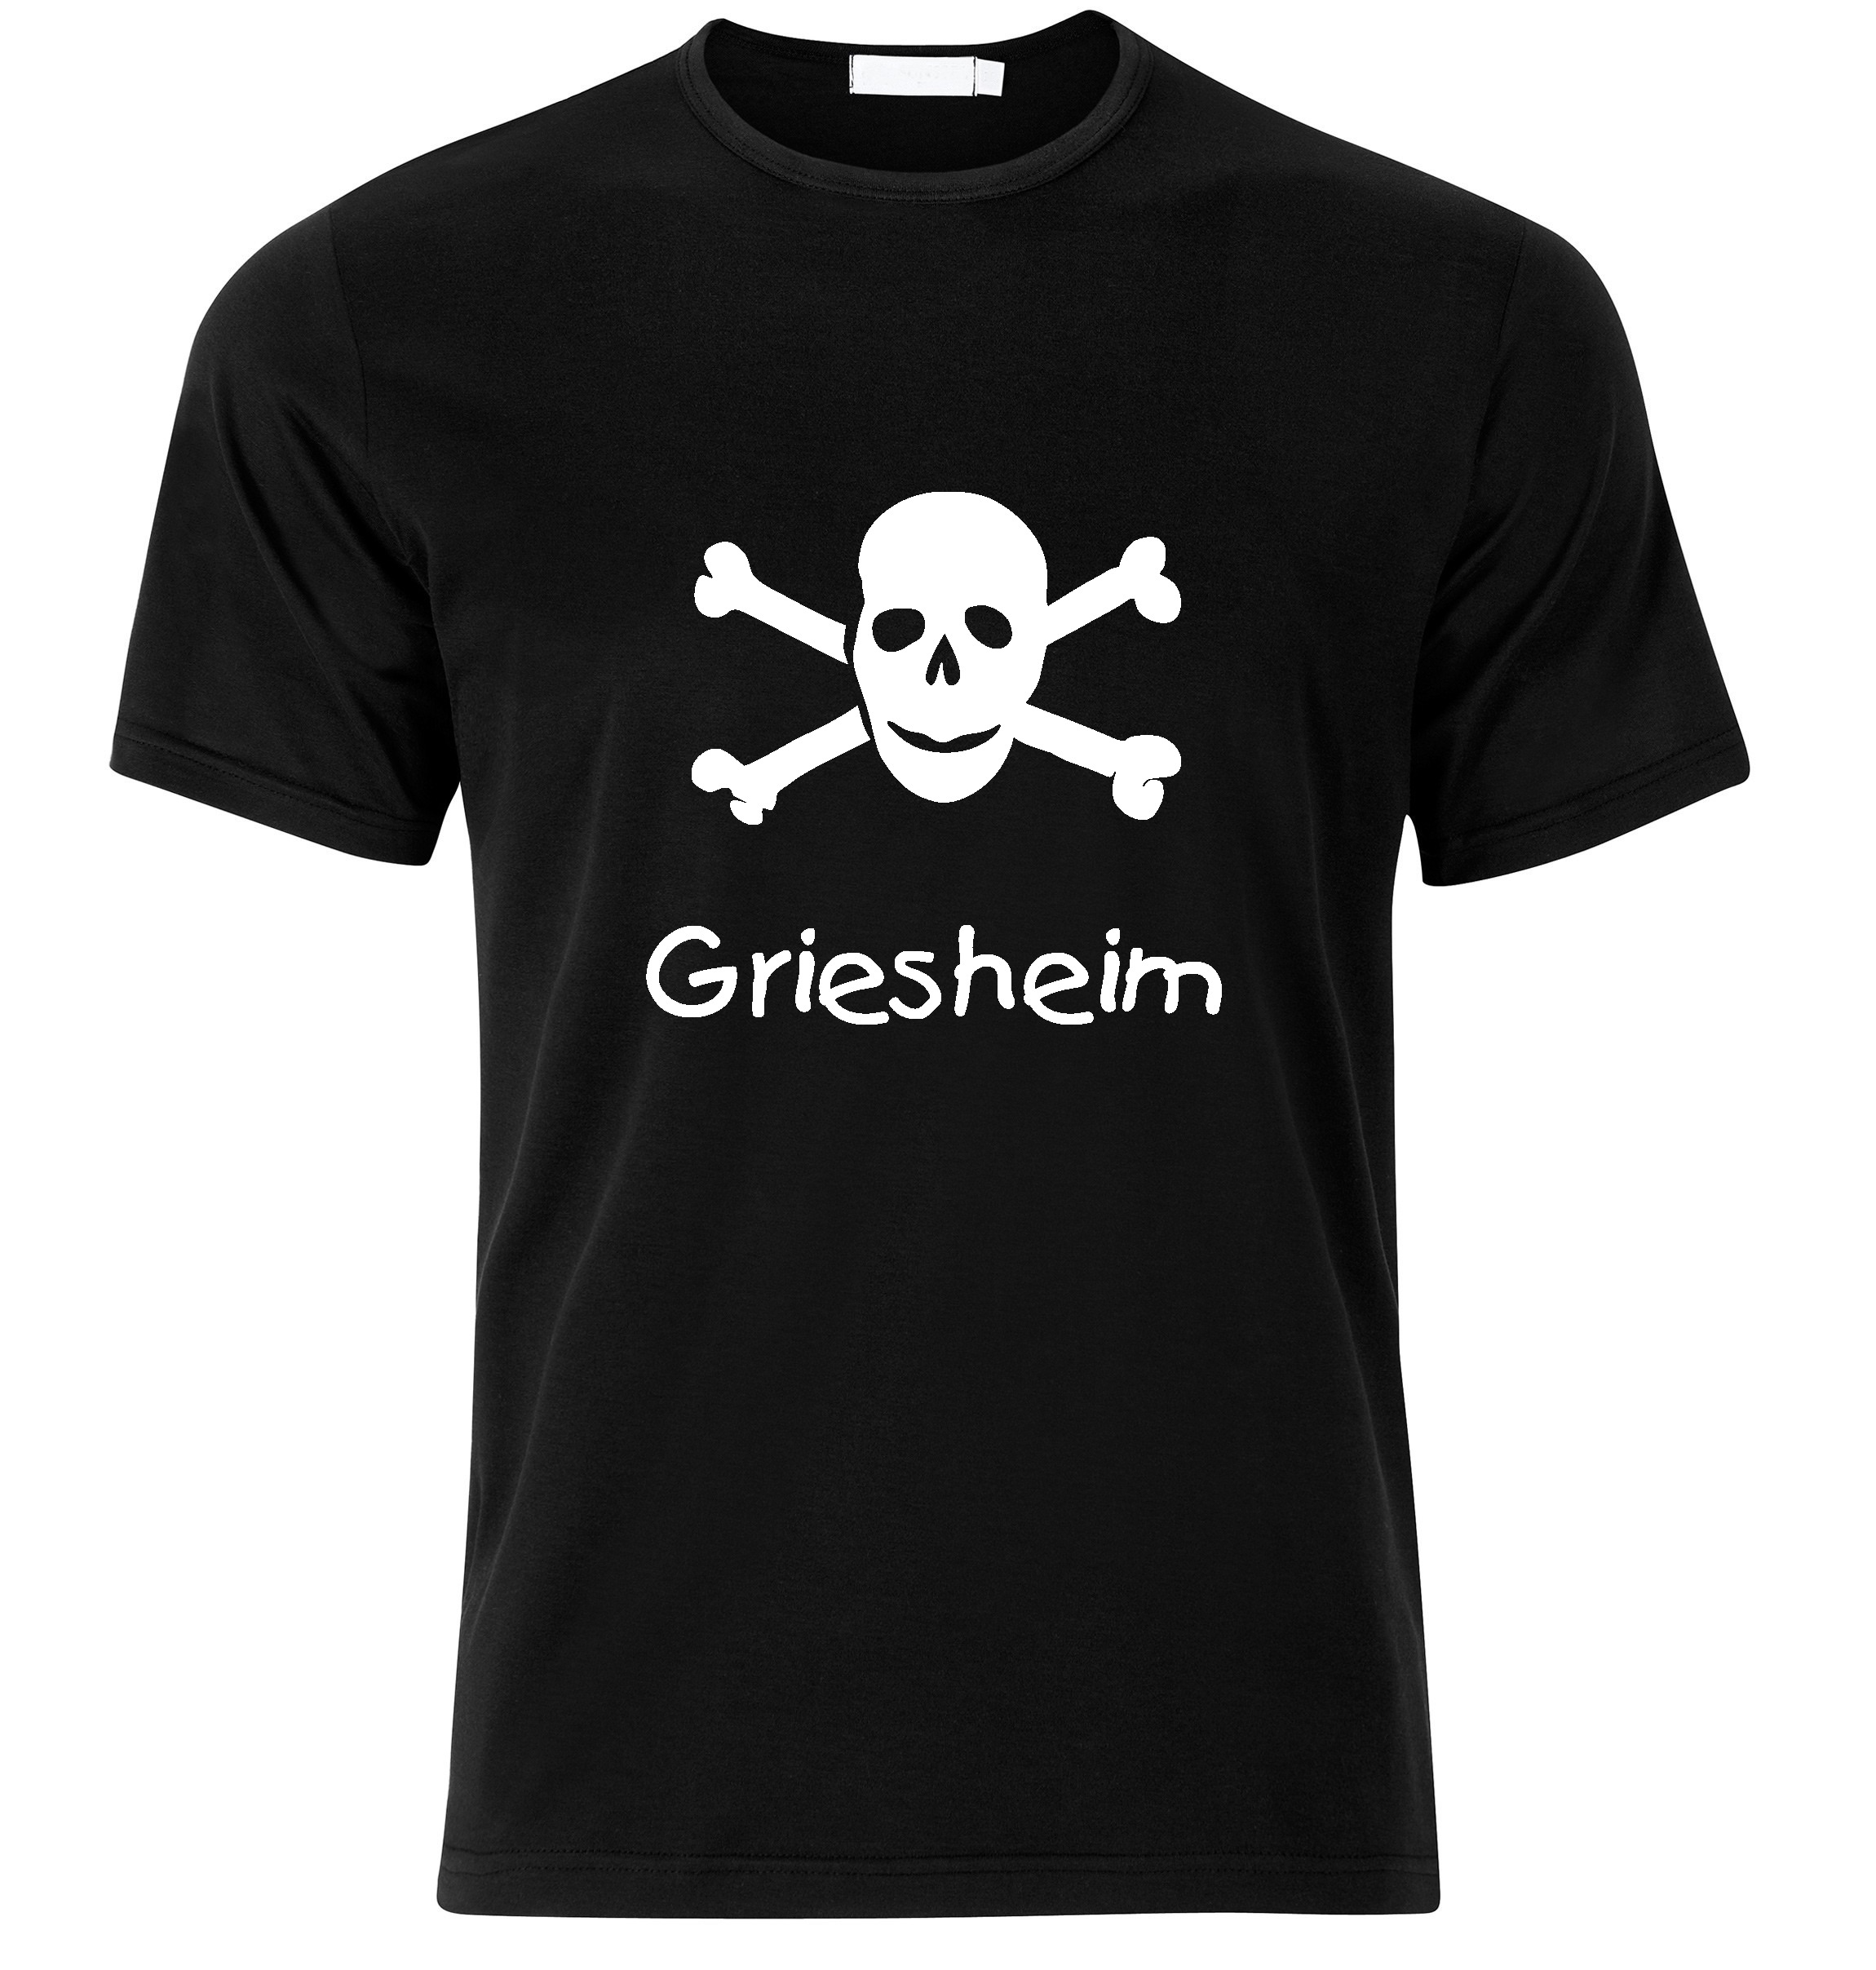 T-Shirt Griesheim Jolly Roger, Totenkopf